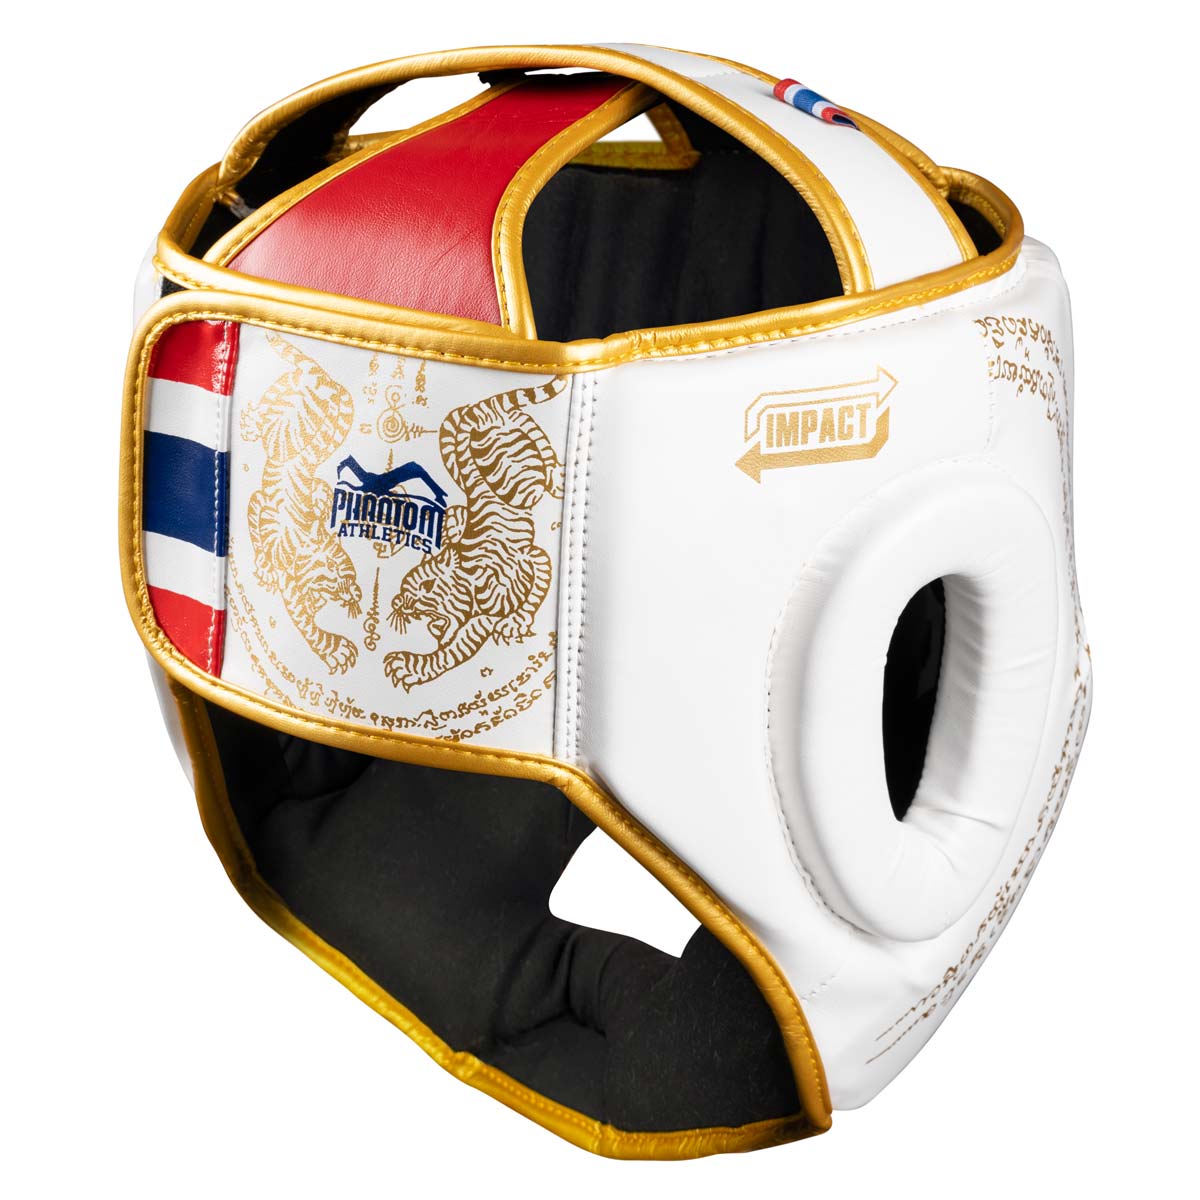 Phantom Muay Thai Kopfschutz für Thaiboxen und MMA Sparring, Wettkampf und Training. Im traditionellen Sak Yant Design und der Farbe Weiß/Gold.